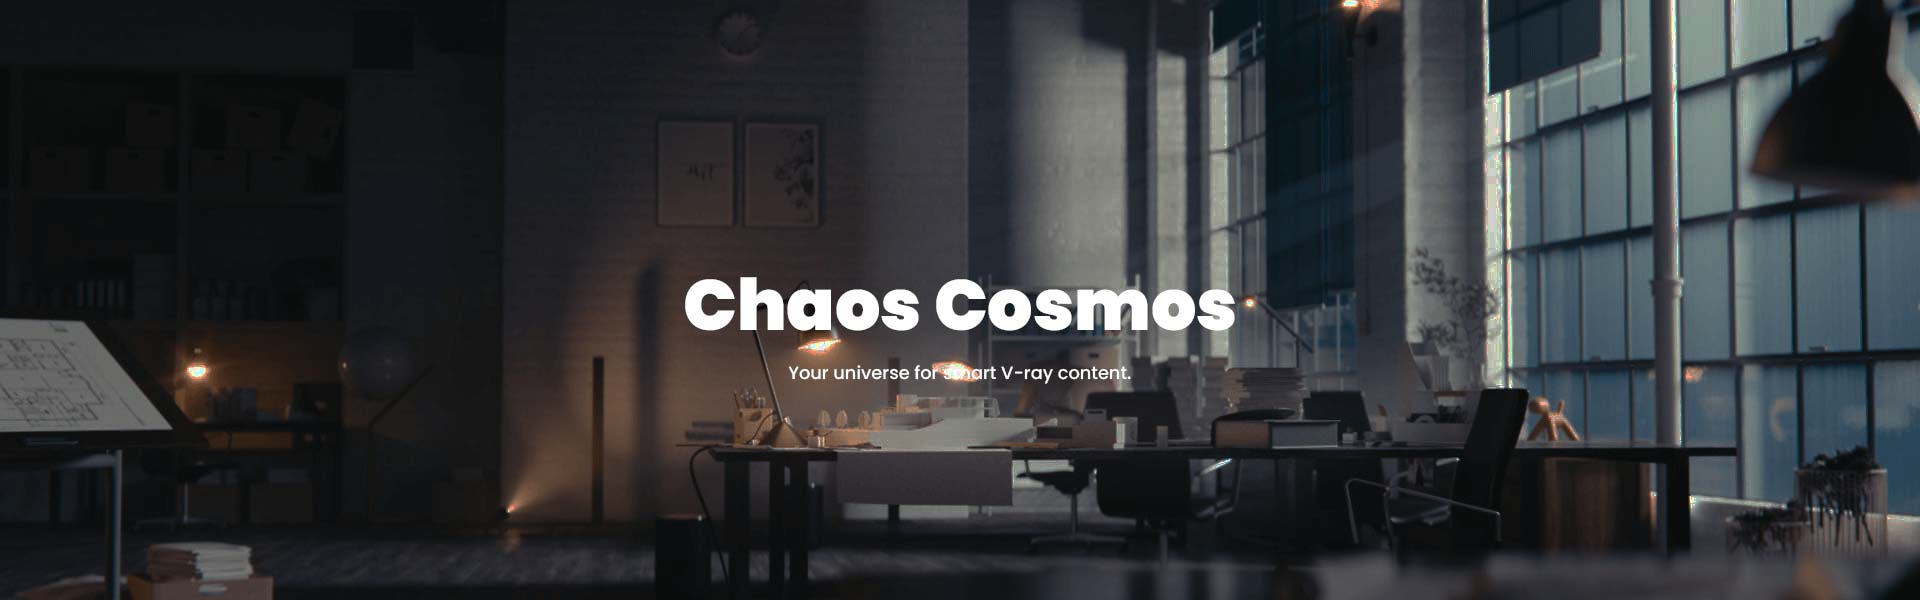 Chaos cosmos